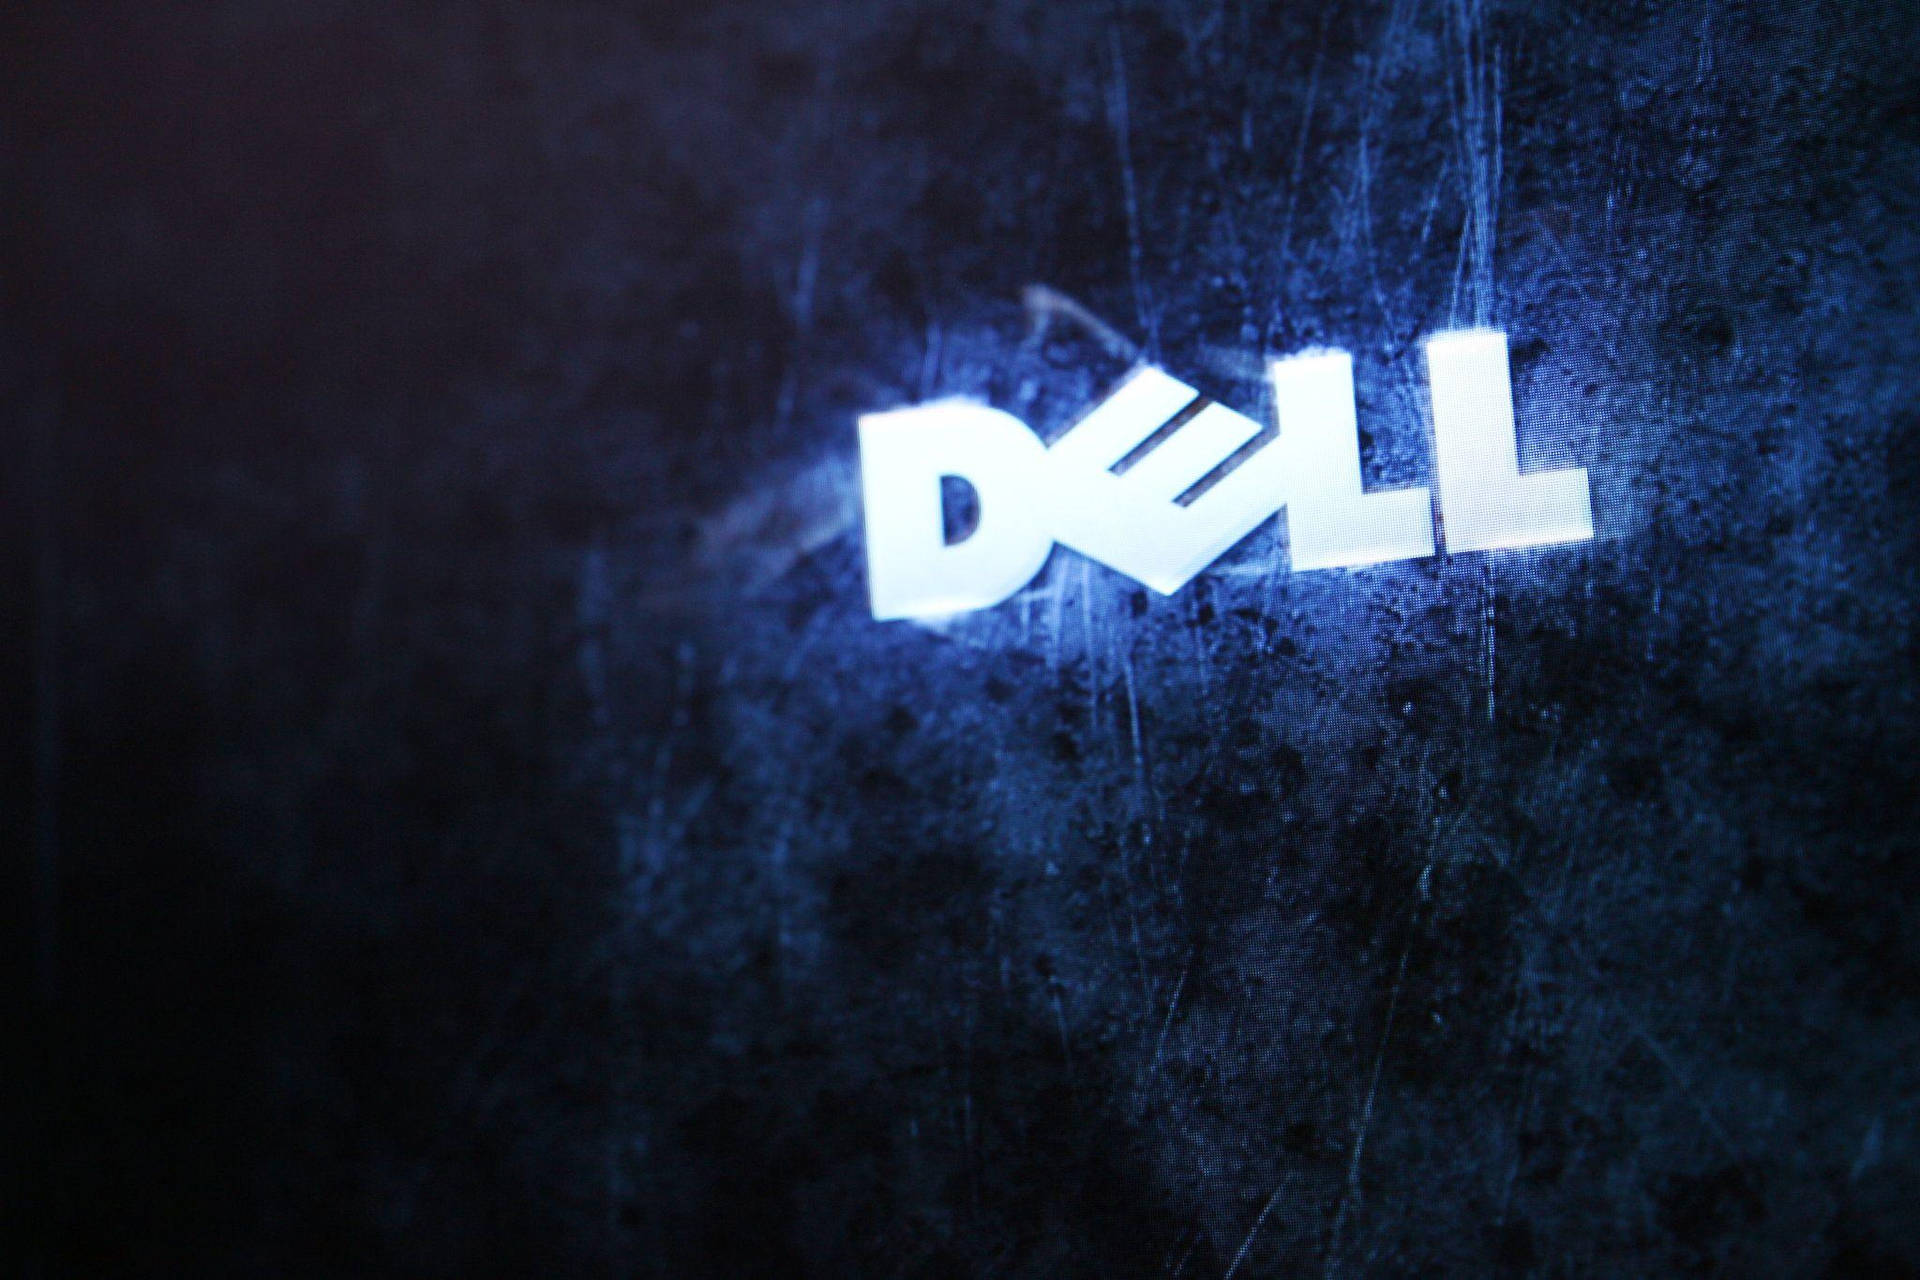 Glitchy Dell Hd-logo Wallpaper